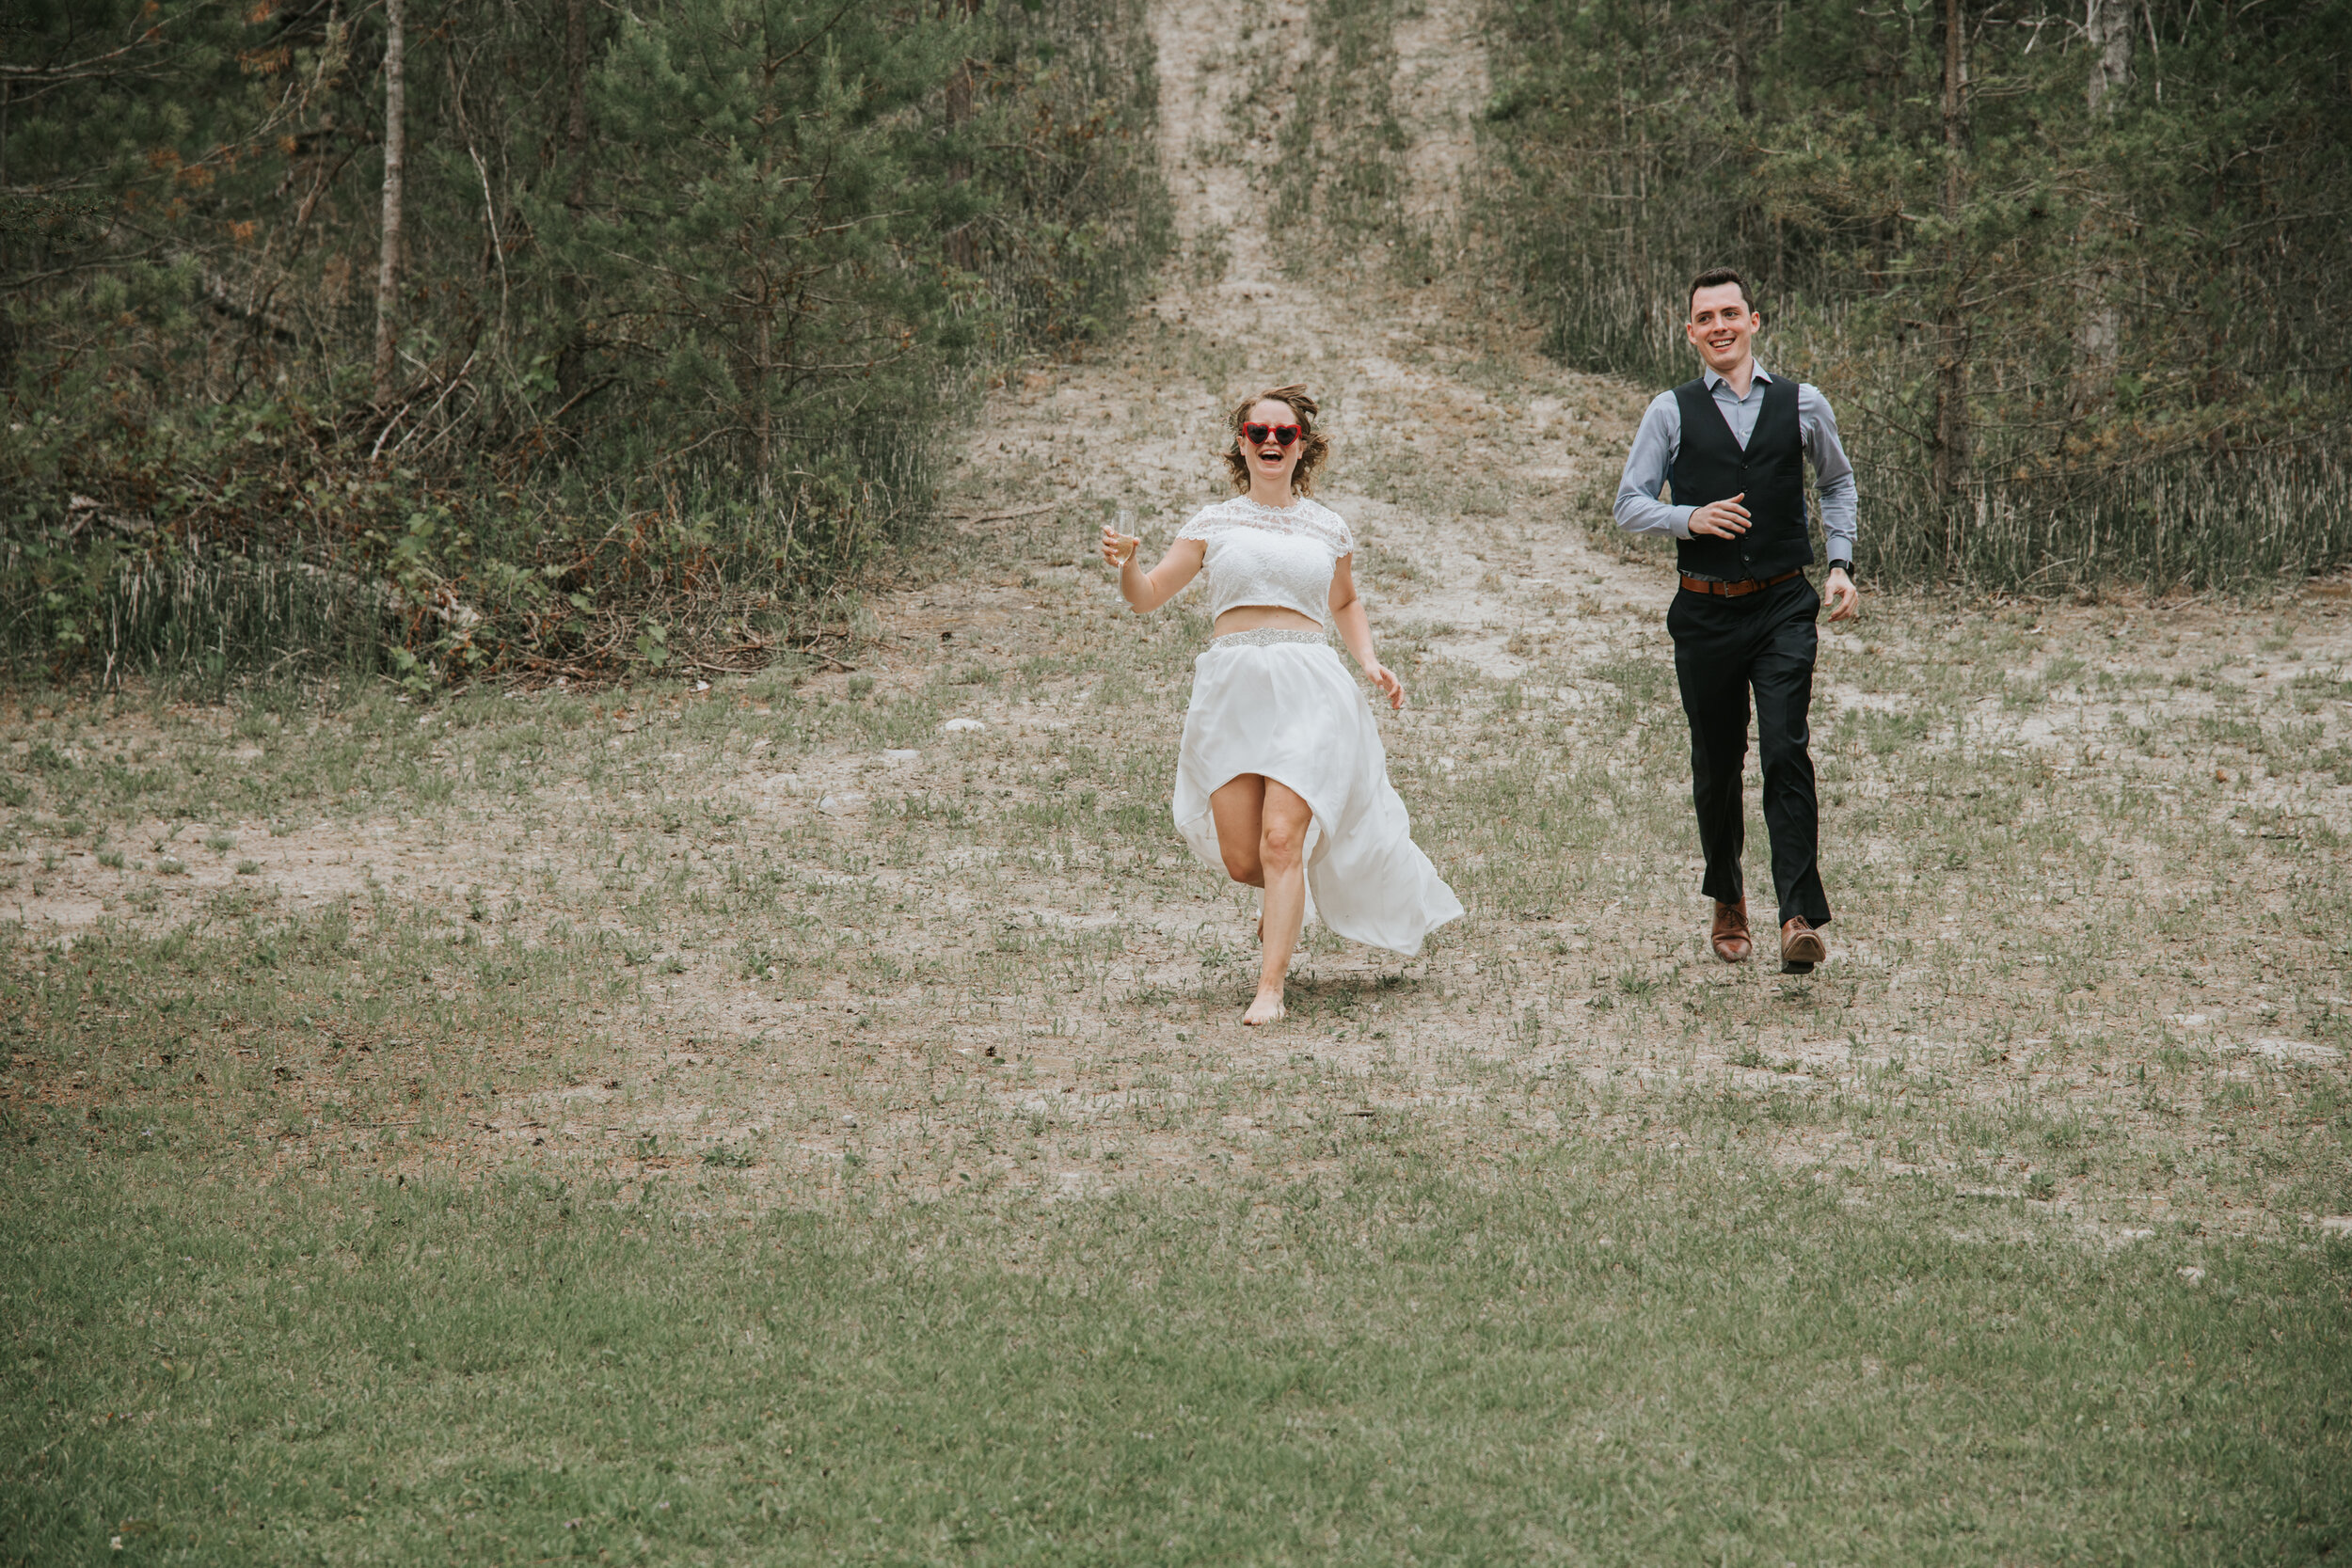 Ontario-backyard-wedding-photography-46.jpg